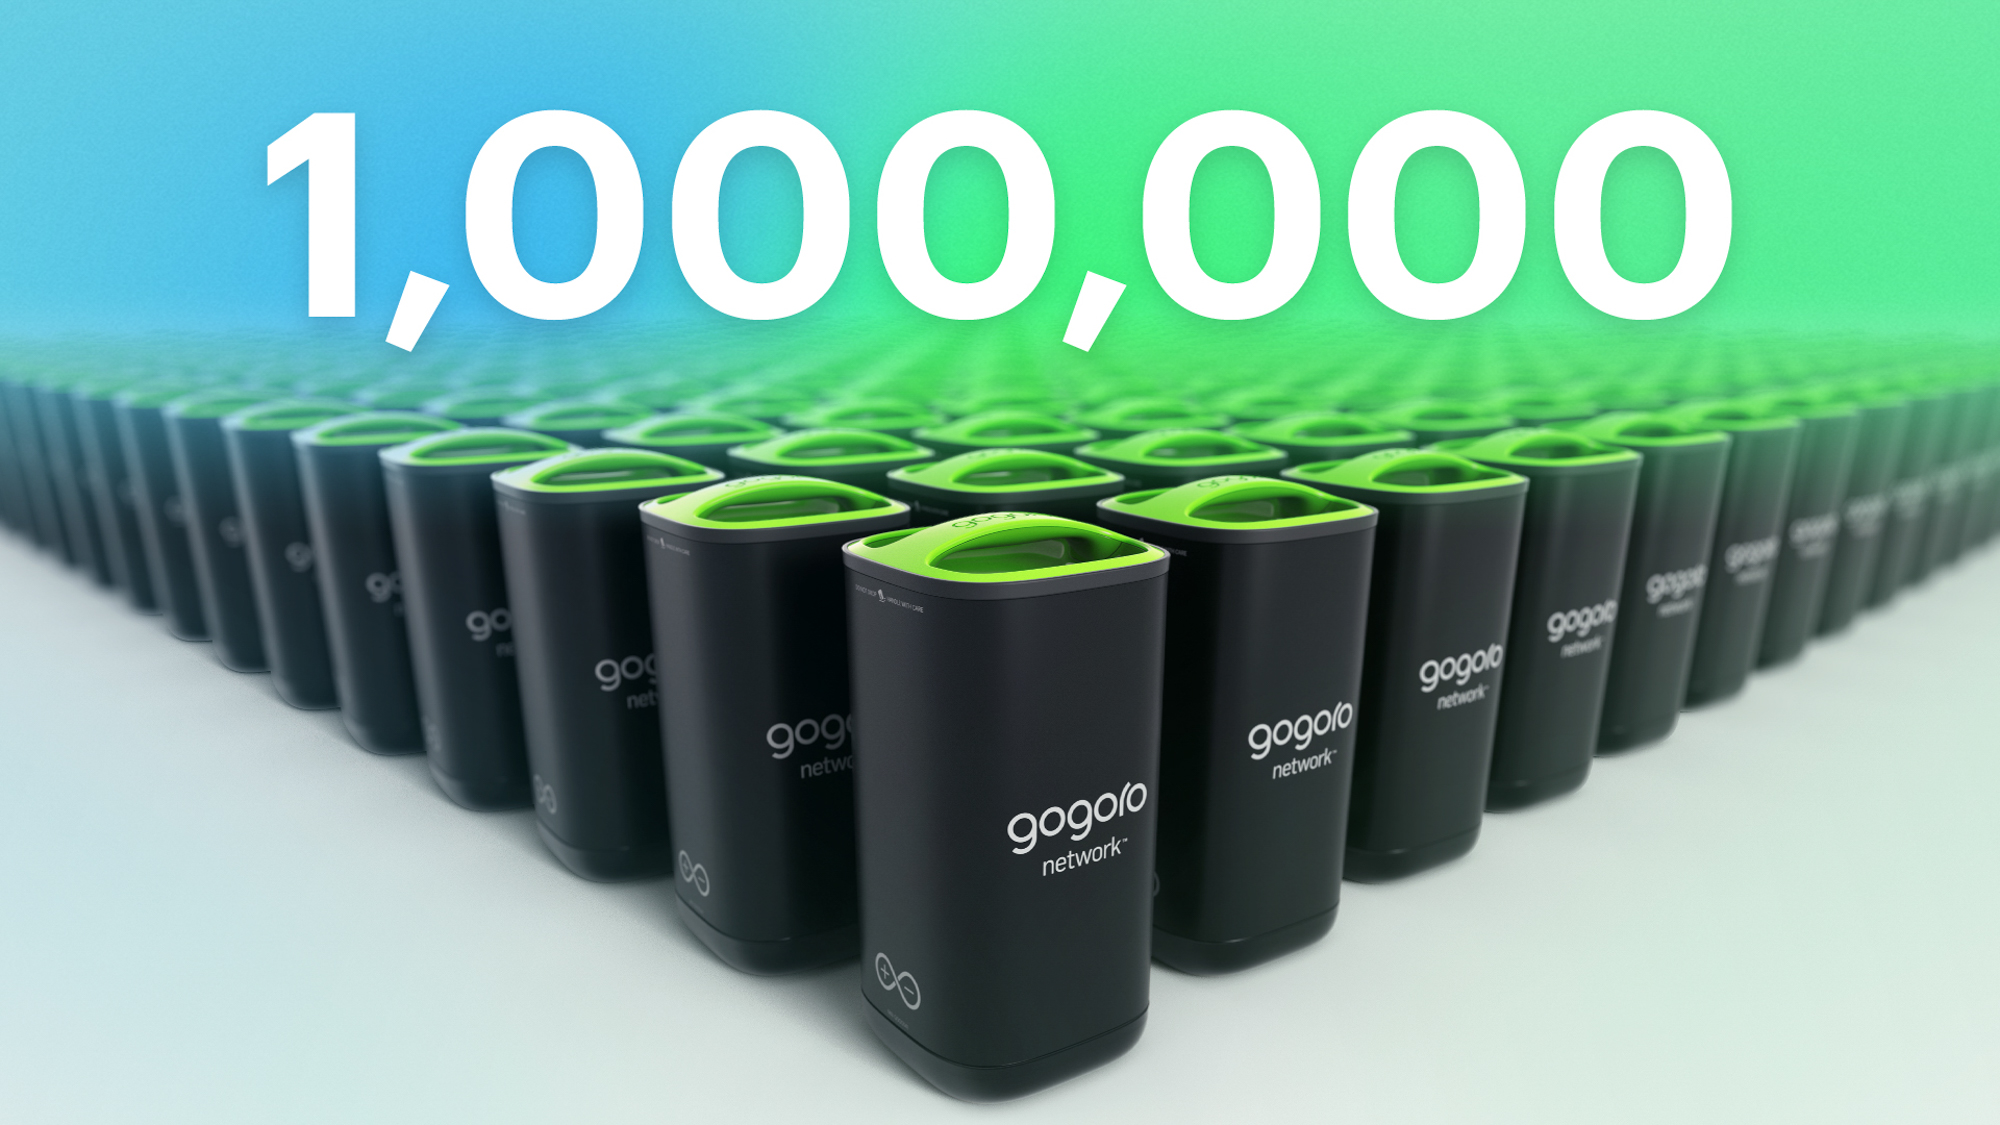 第 100 萬顆 Gogoro Network® 智慧電池生產下線